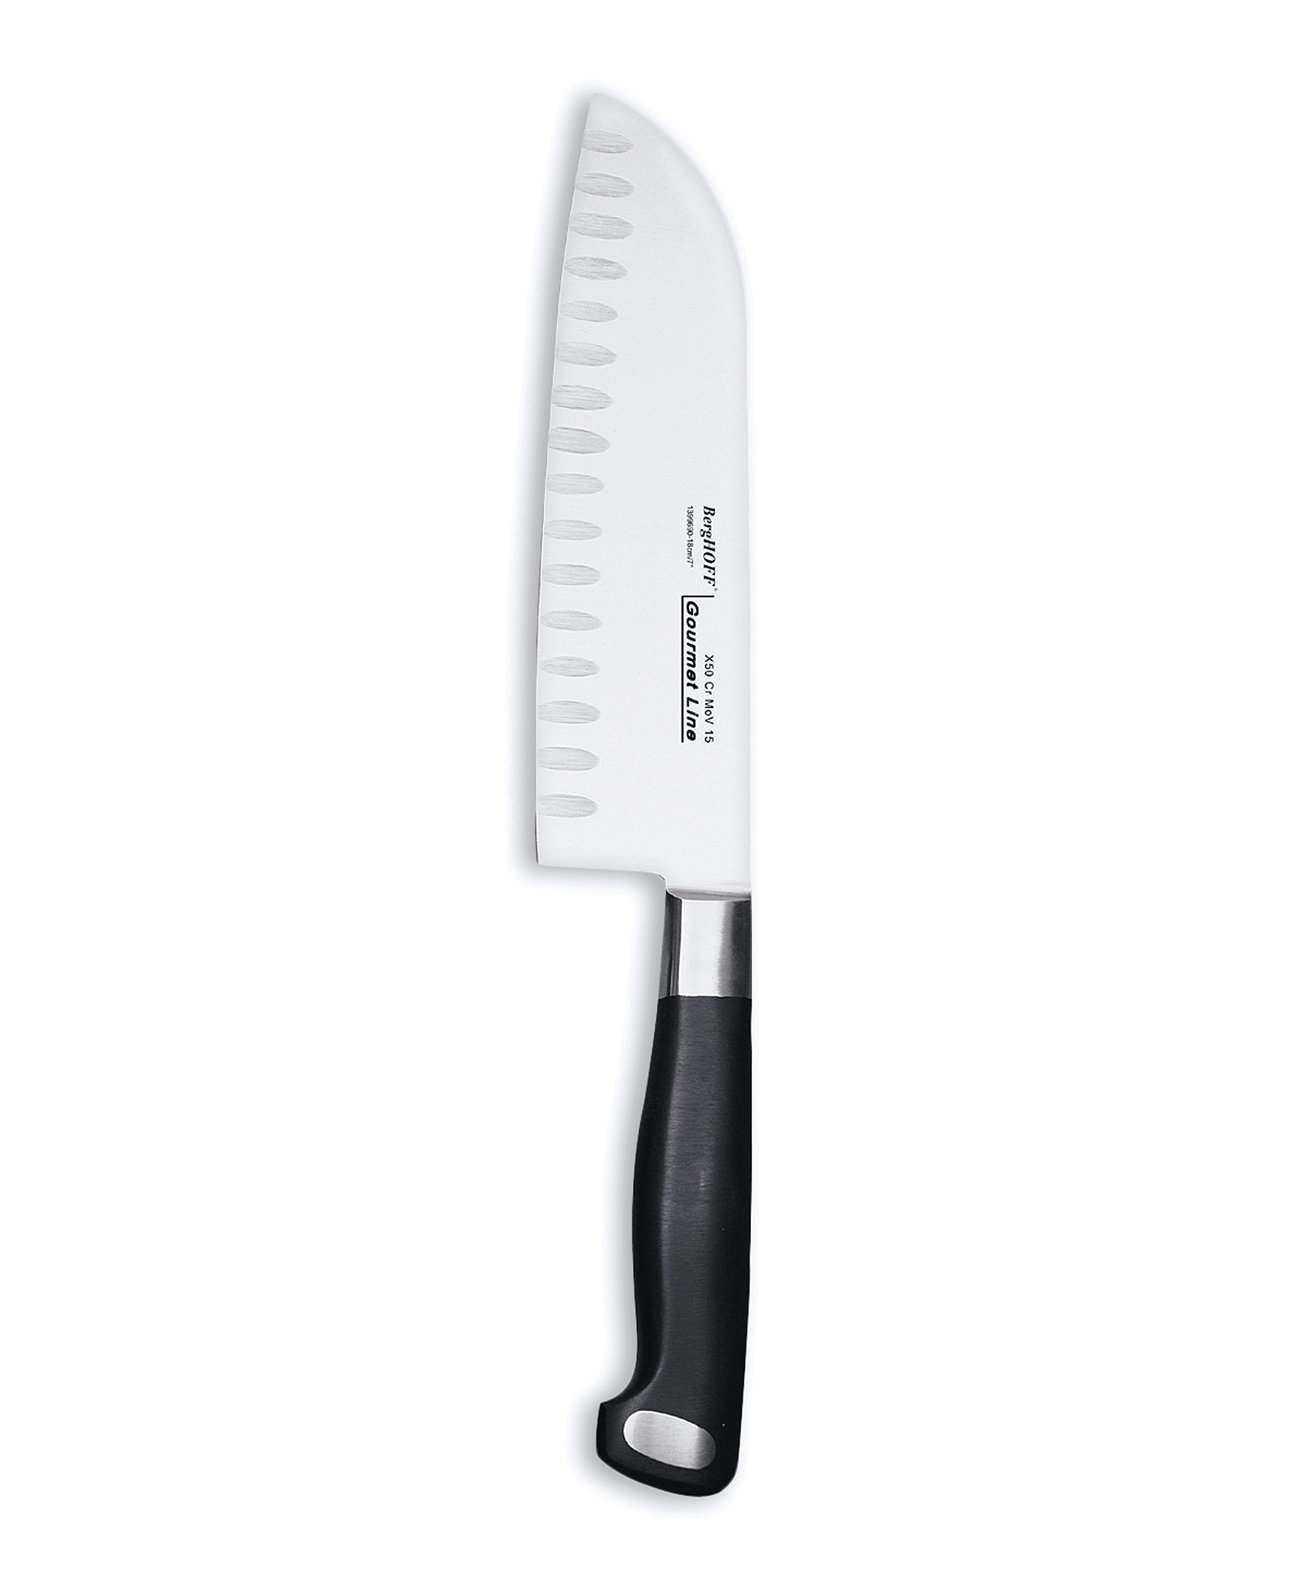 Нож Santoku Gourmet 7 дюймов из нержавеющей стали, зубчатый BergHOFF